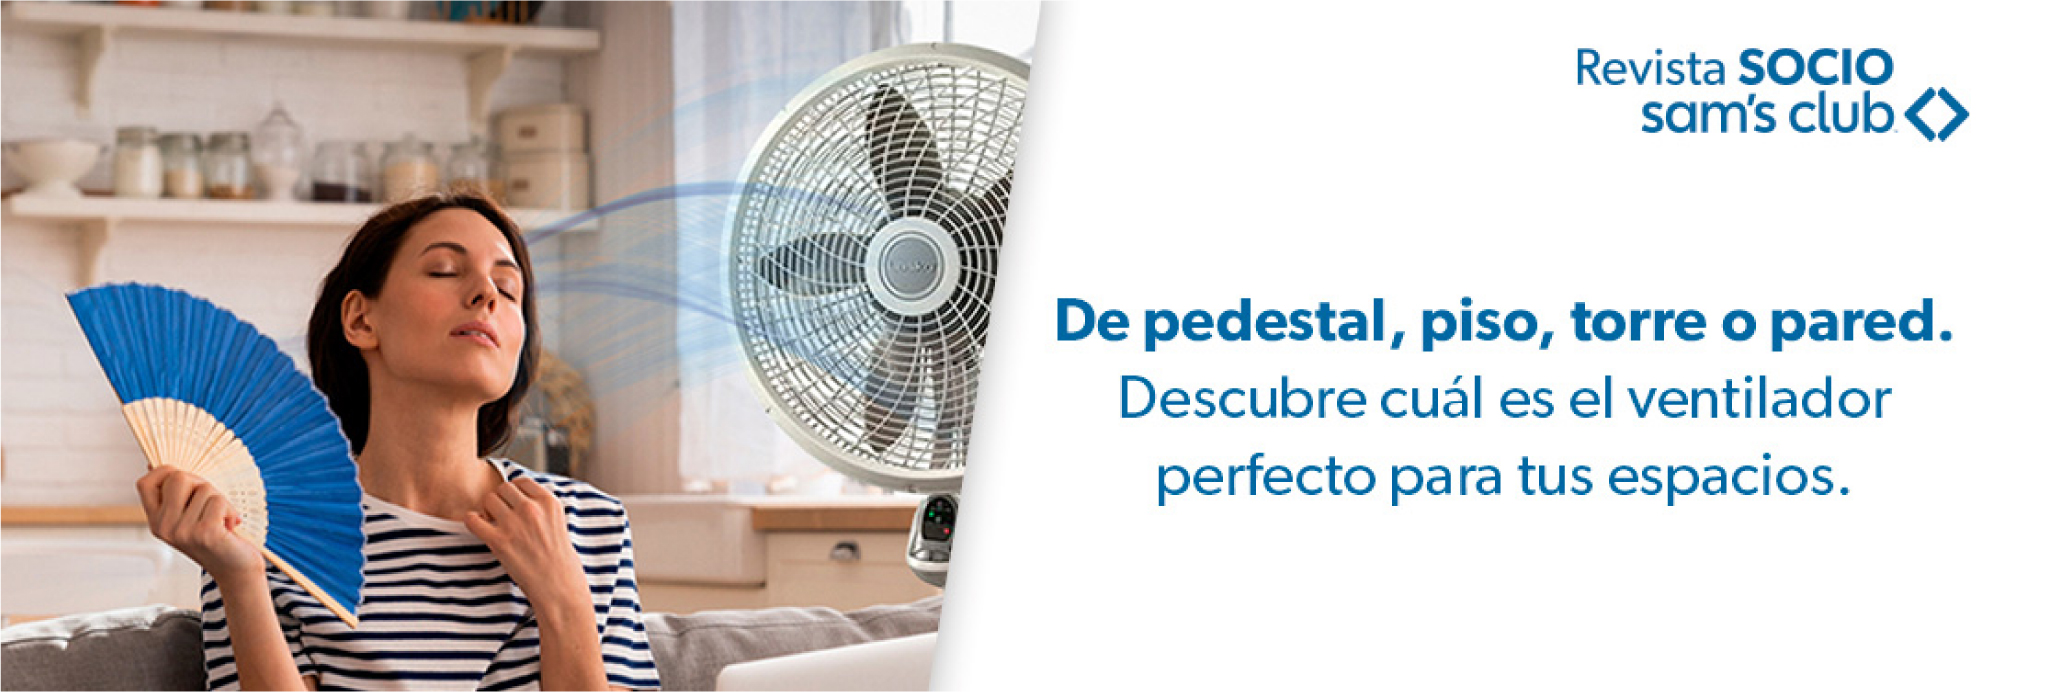 De pedestal, piso, torre o pared. Descubre cuál es el ventilador perfecto para tus espacios.